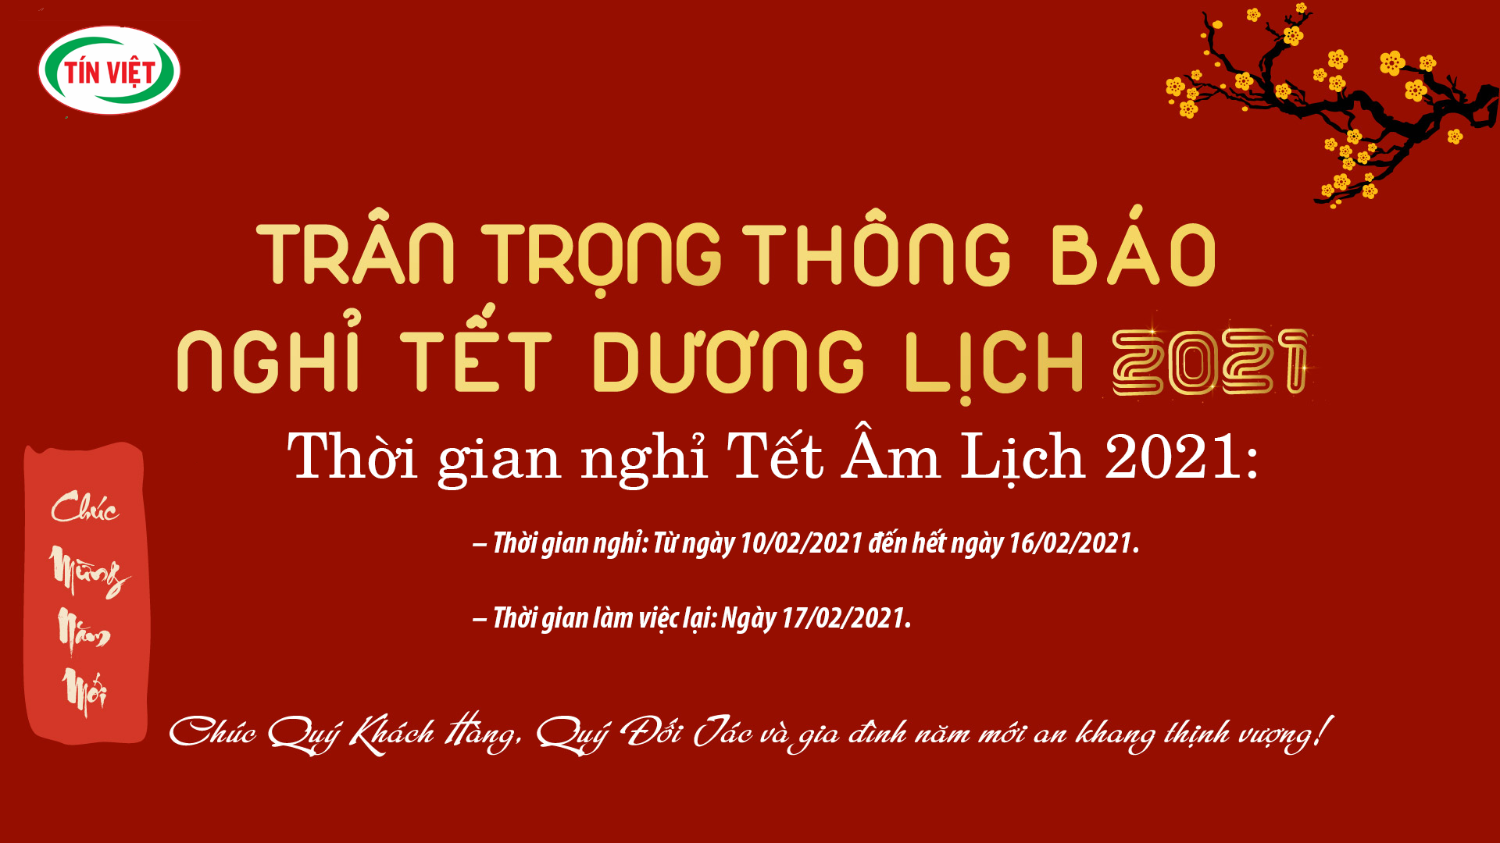 Thông báo lịch nghỉ nguyên đán kế toán Tín Việt 2021